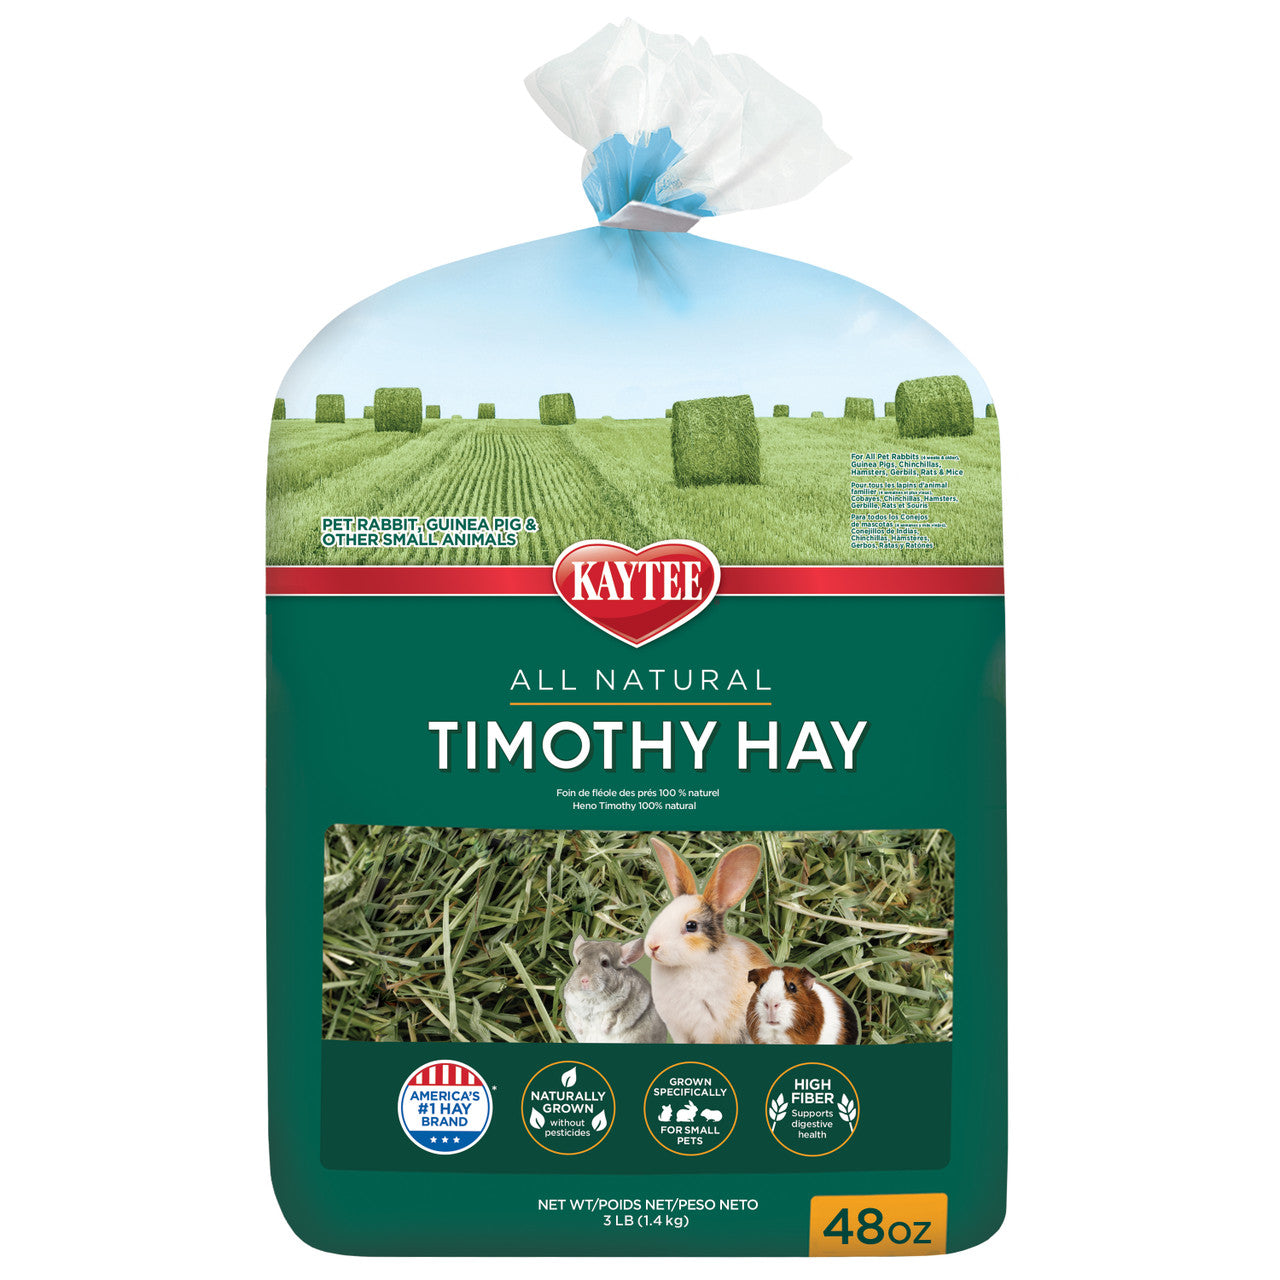 Kaytee All Natural Timothy Hay, 48 oz